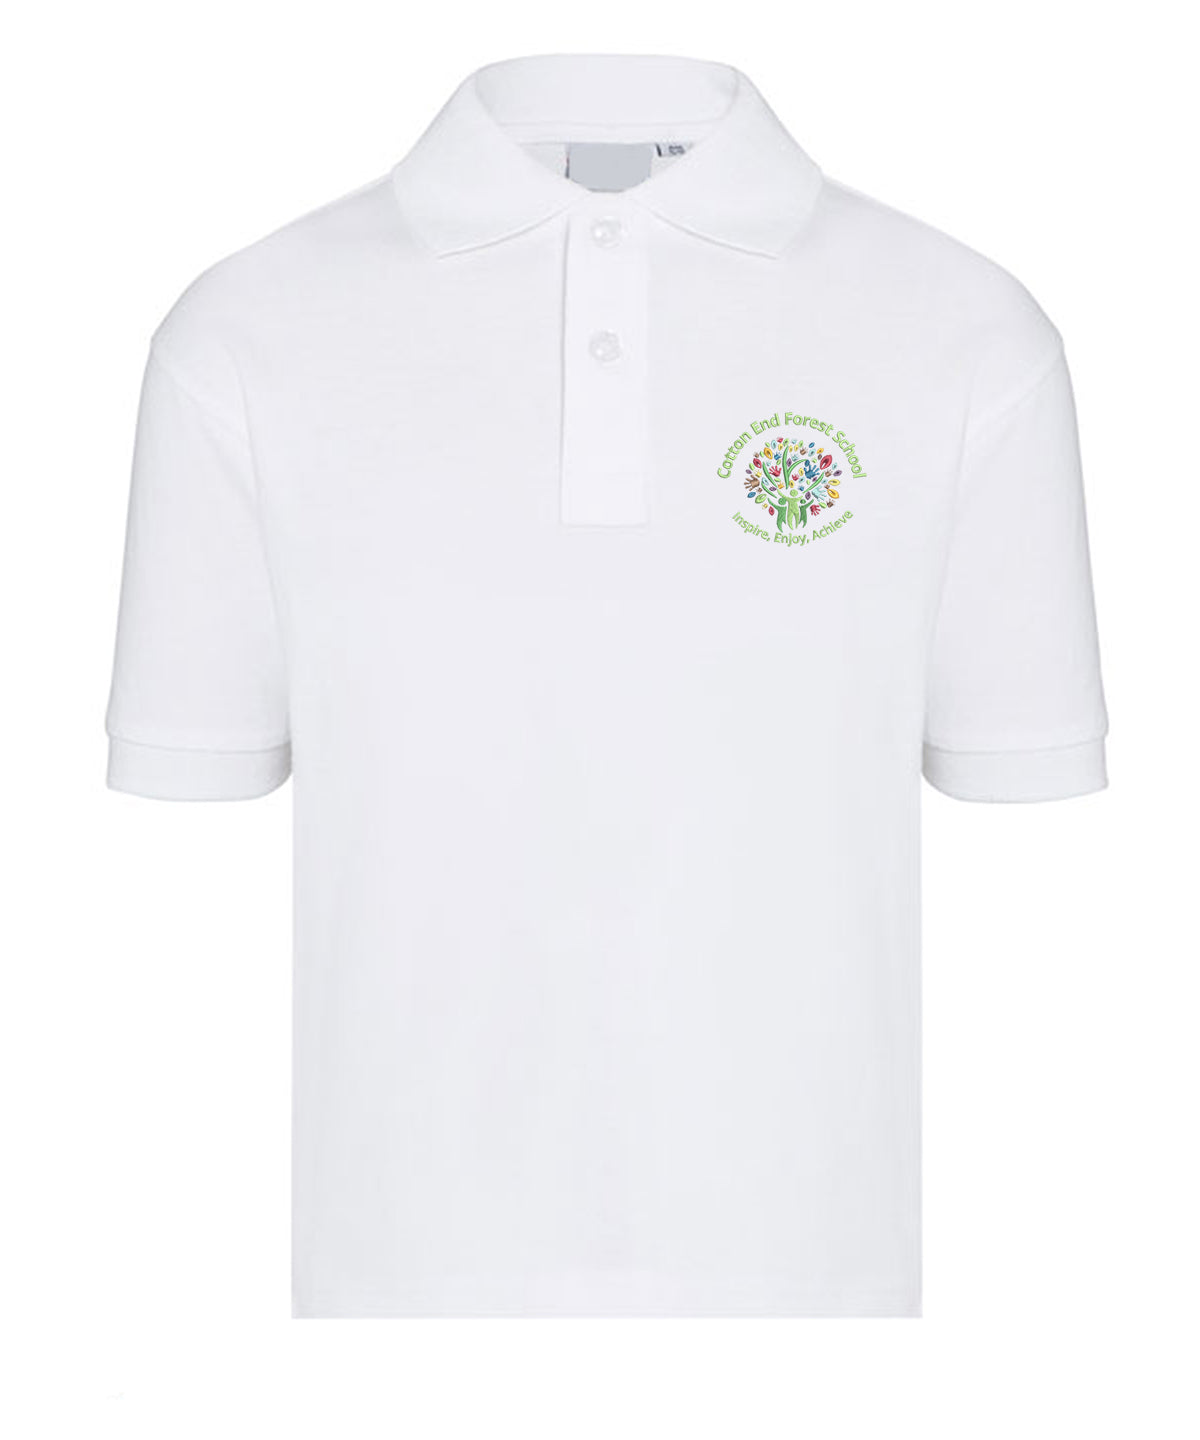 Cotton End Forest School - Polo Shirt - School Uniform Shop